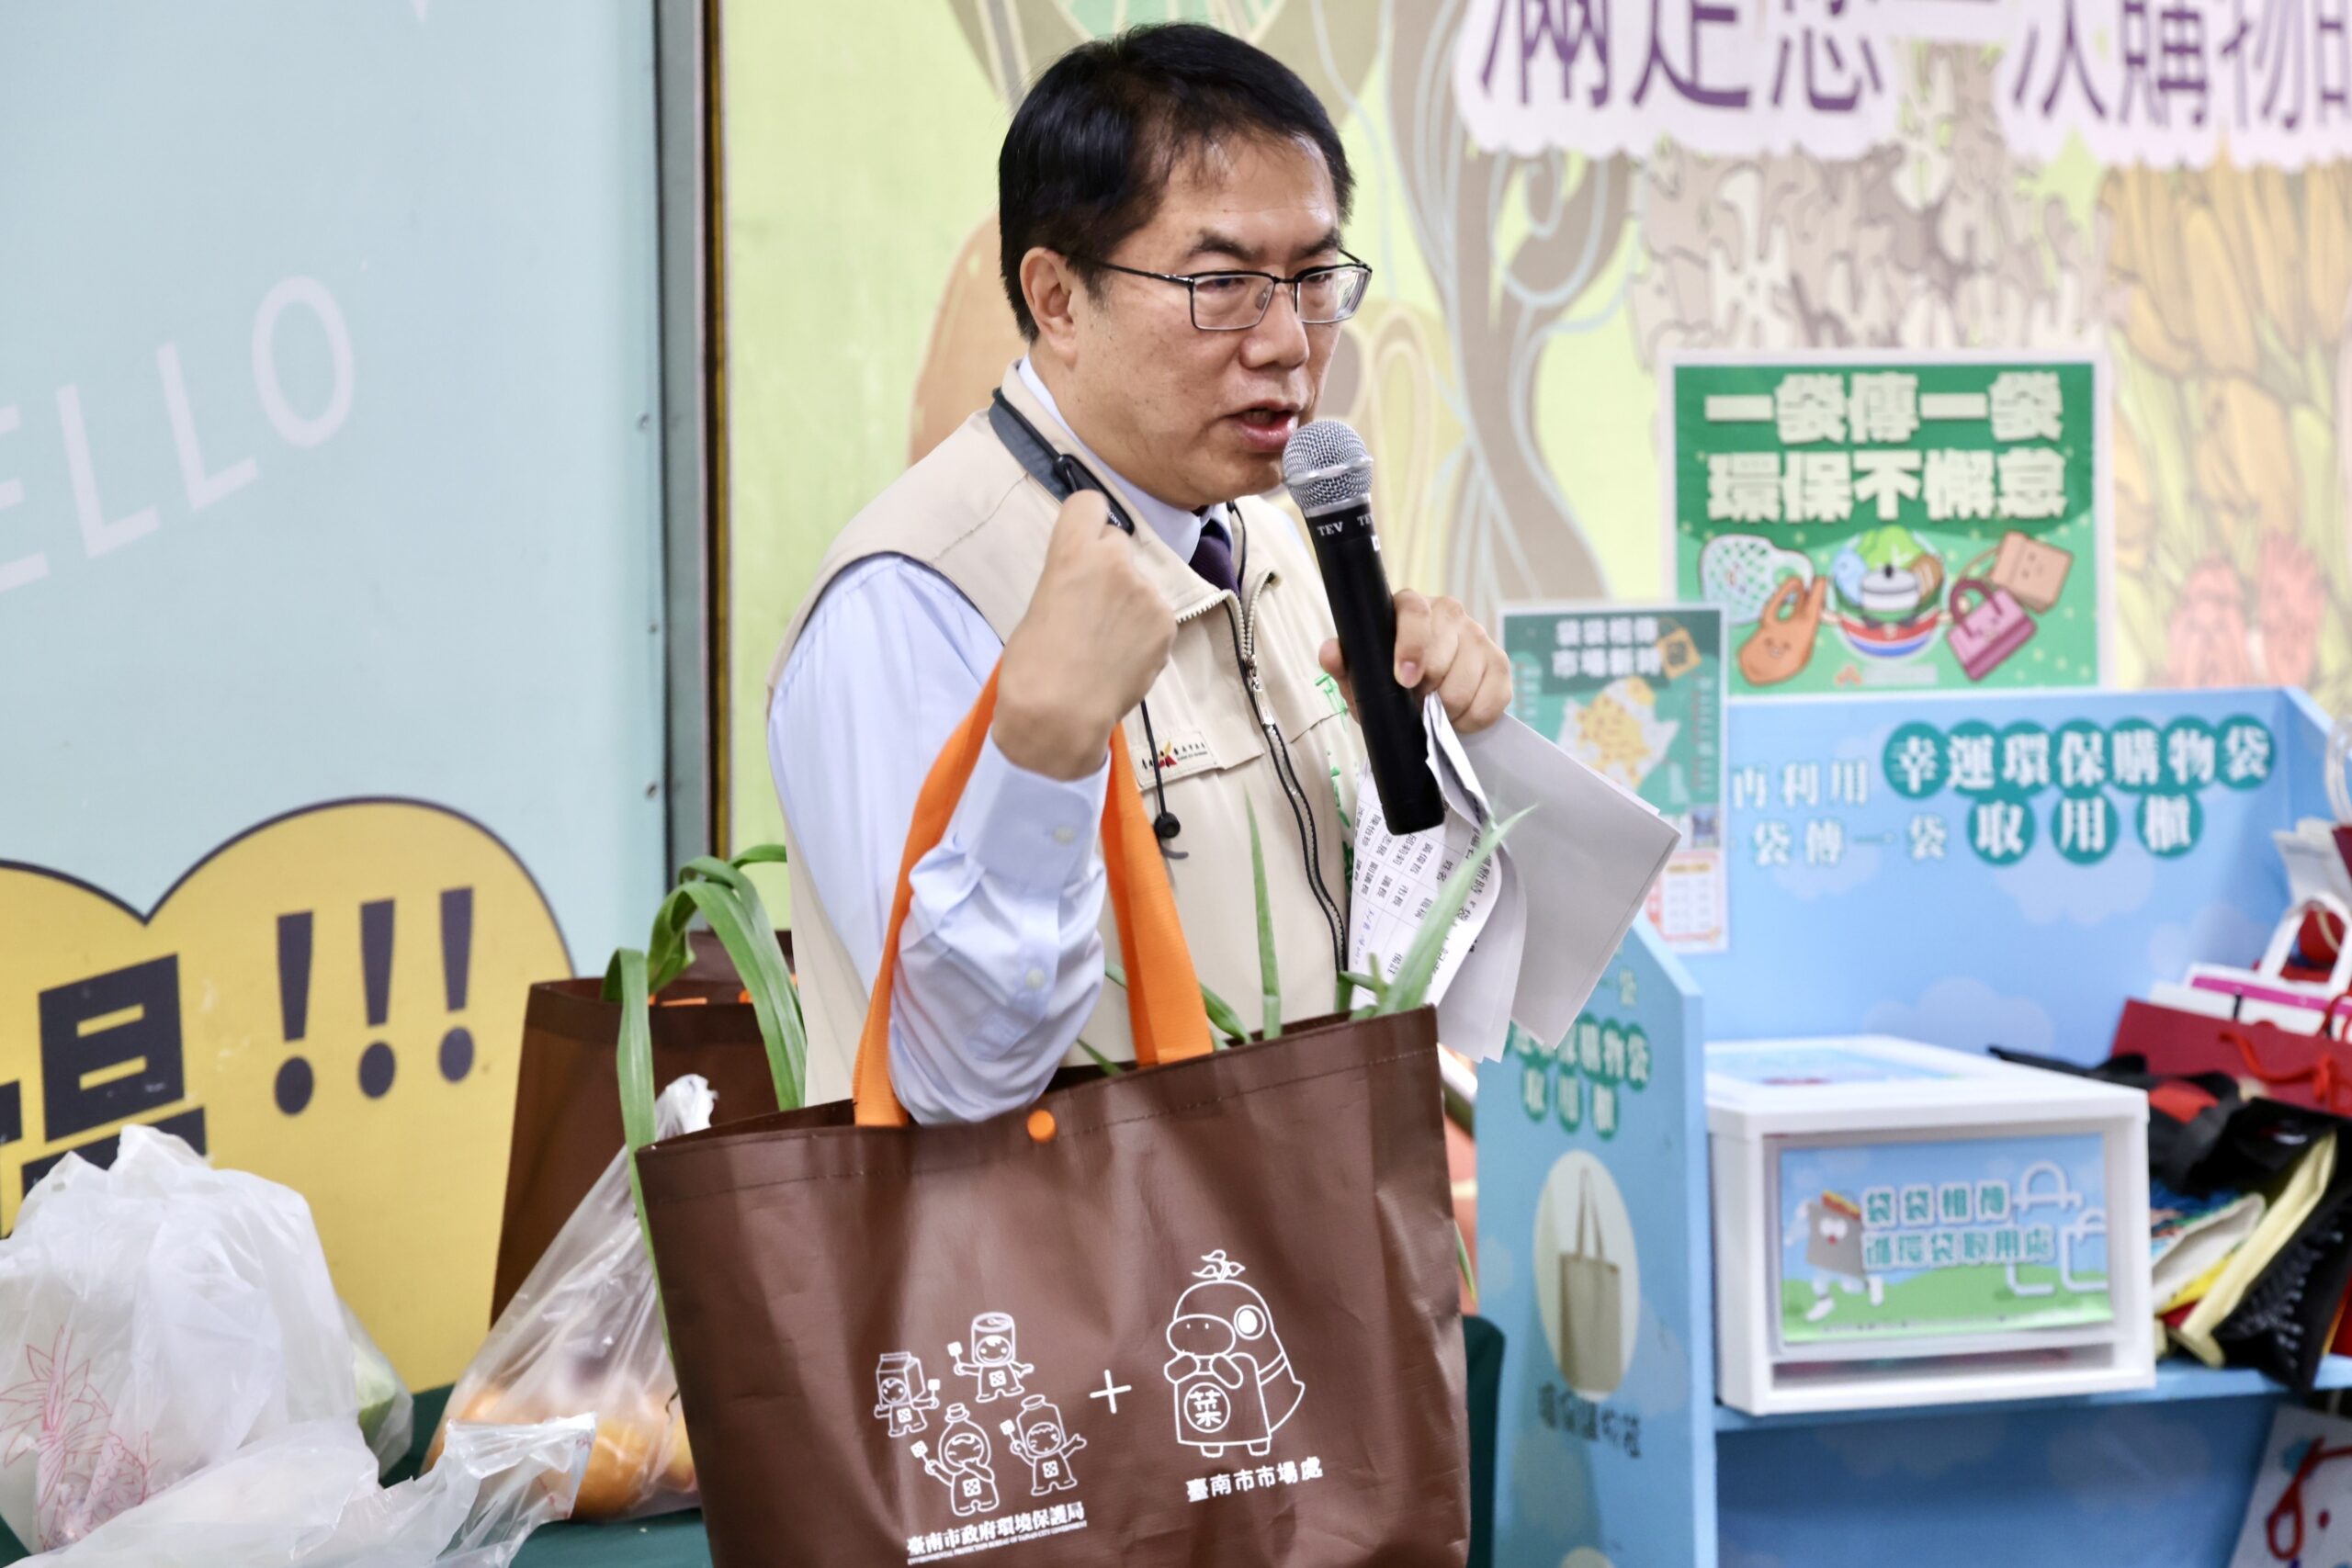 台南市场新时「袋」  黄伟哲号召民众响应「少用、自备、再使用」减塑妙招 